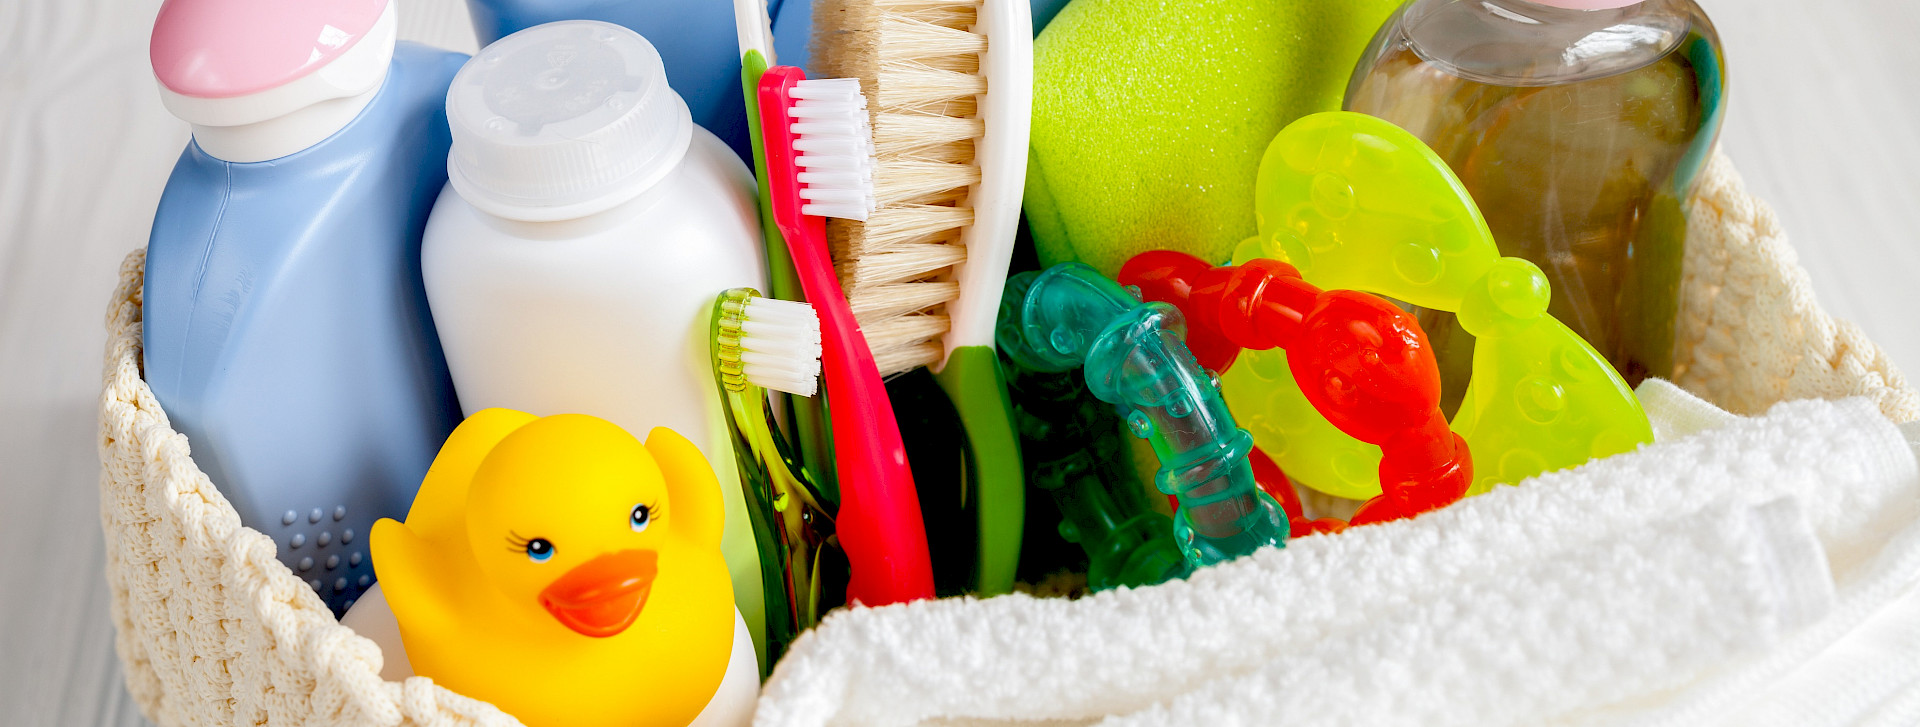 Verschiedene Bedarfsgegenstände in einem Korb (Shampoo, Zahnbürste, Spielzeug)